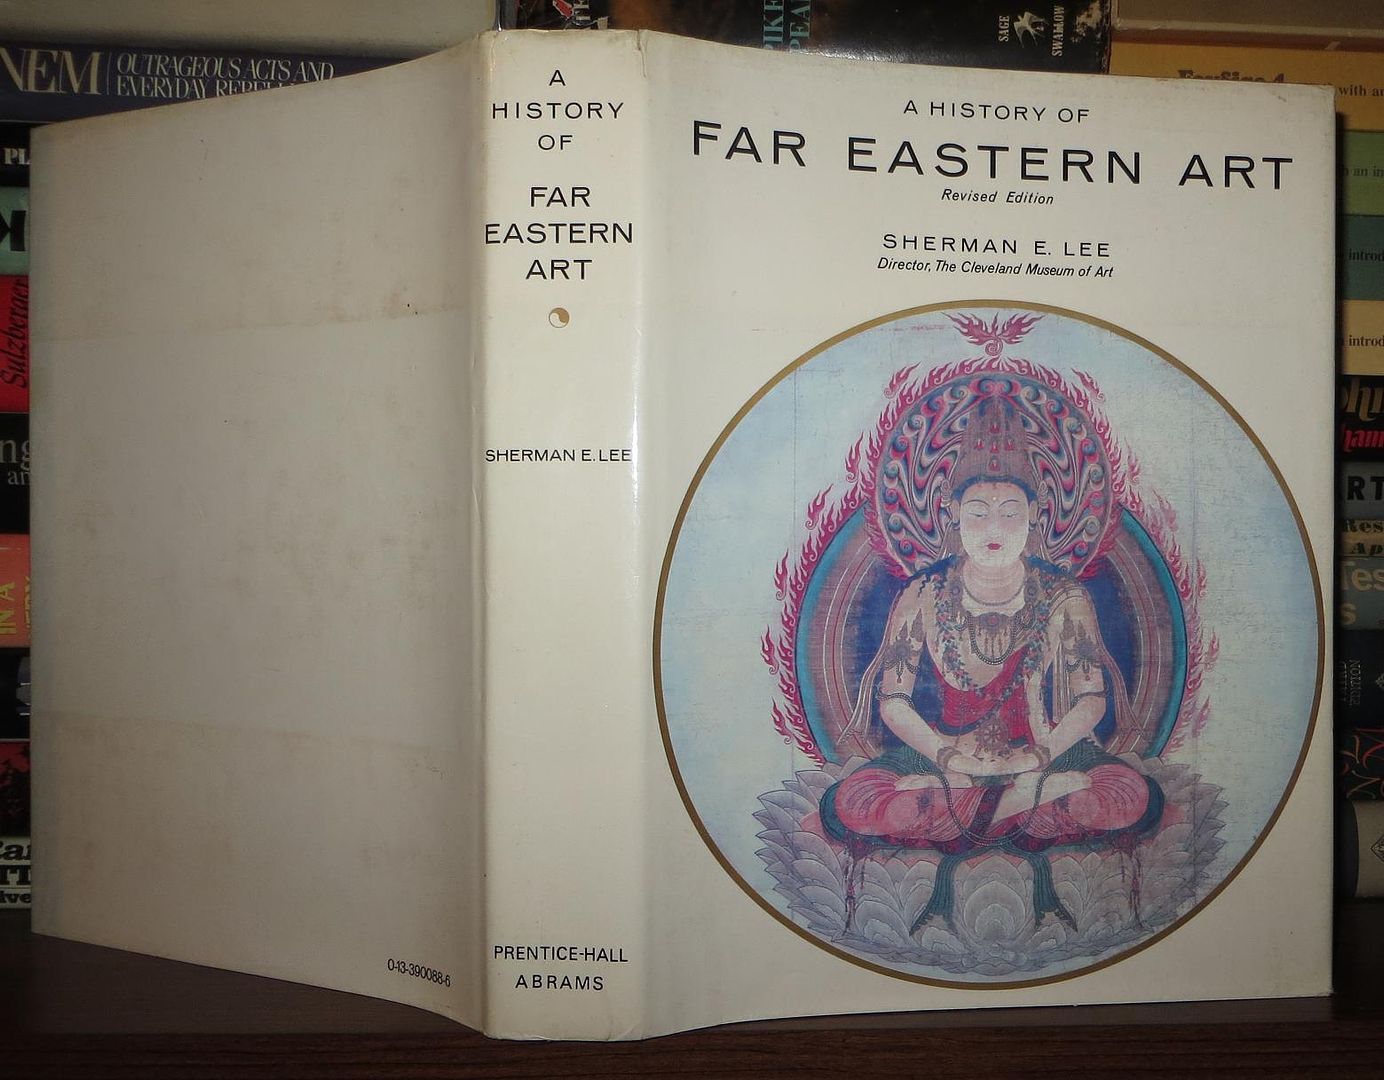 LEE, SHERMAN E - A History of Far Eastern Art